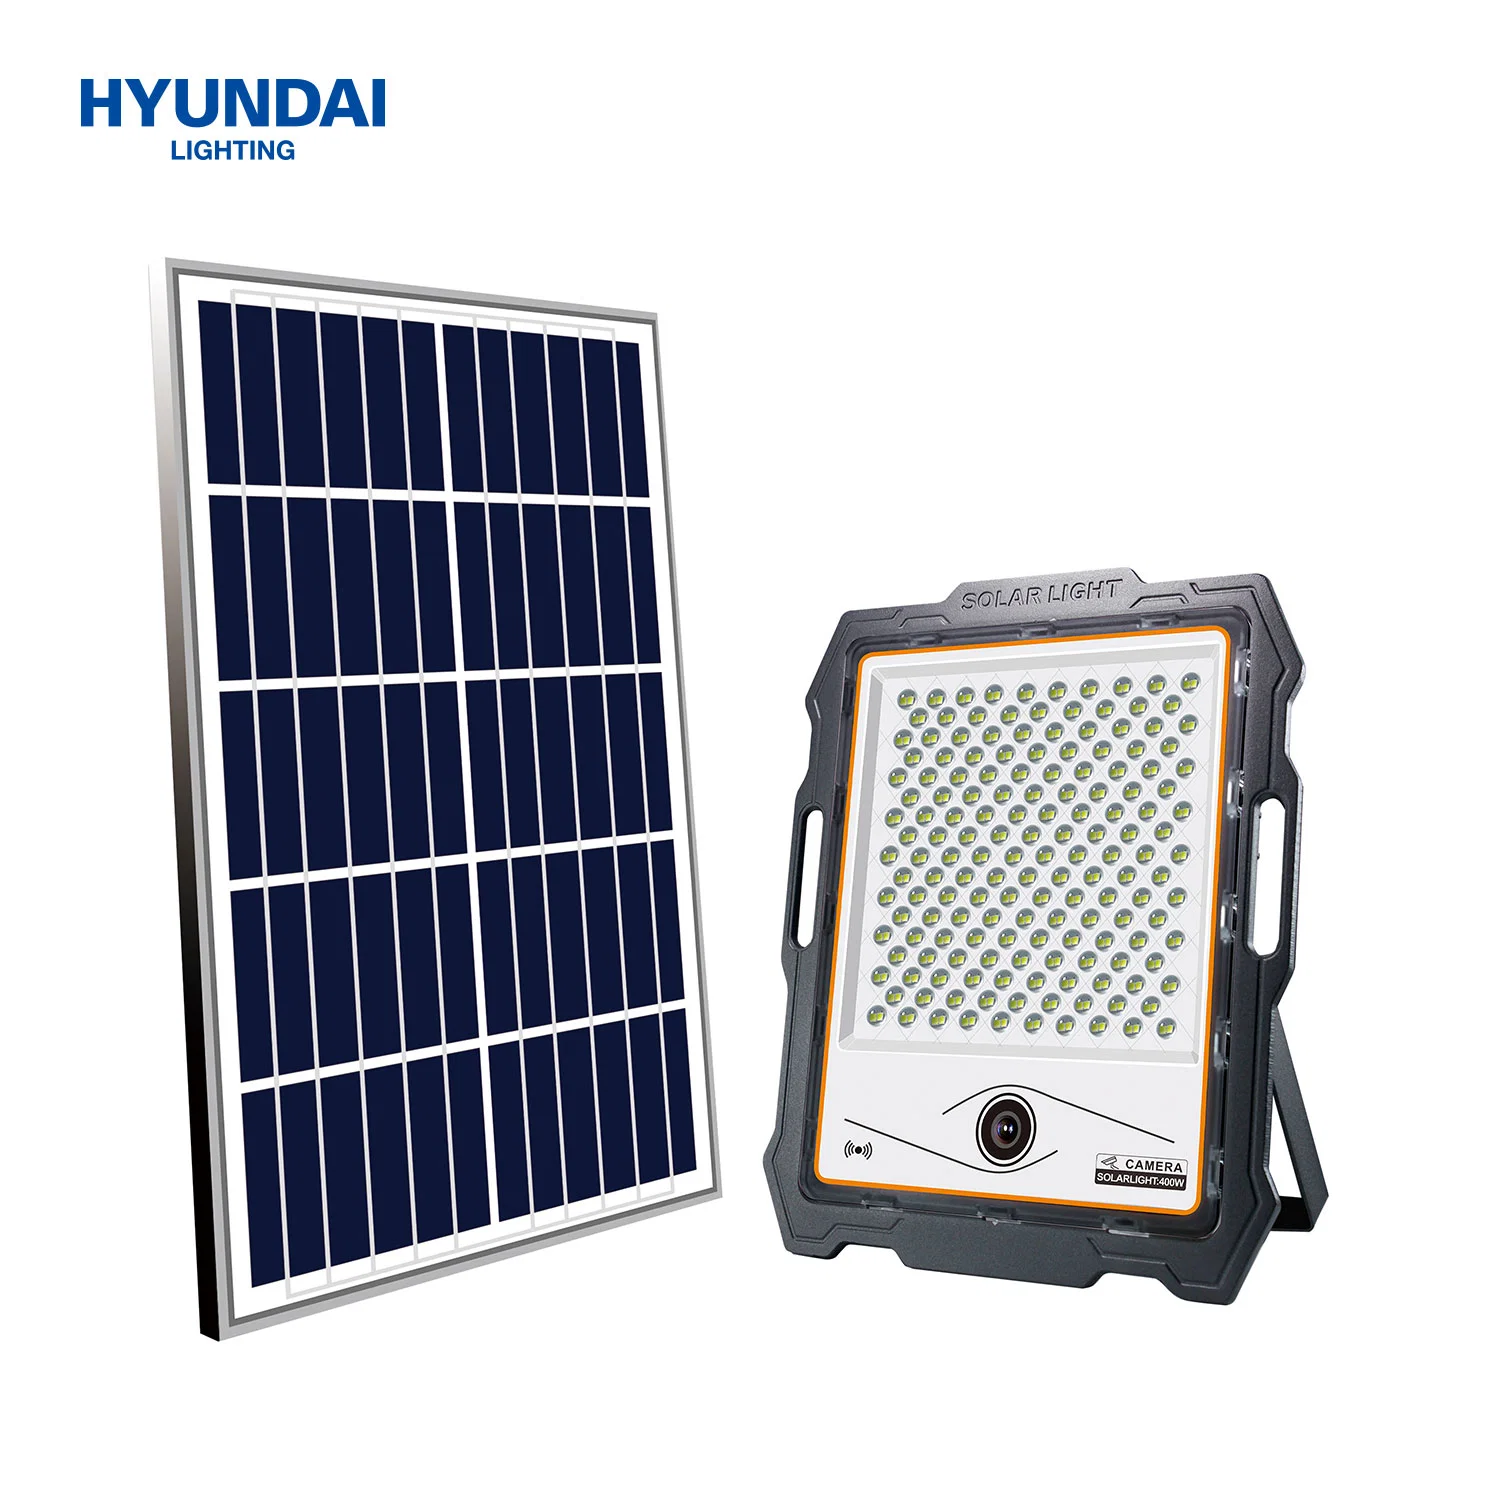 Foco Solar Hyundai 100W-400W com Câmara